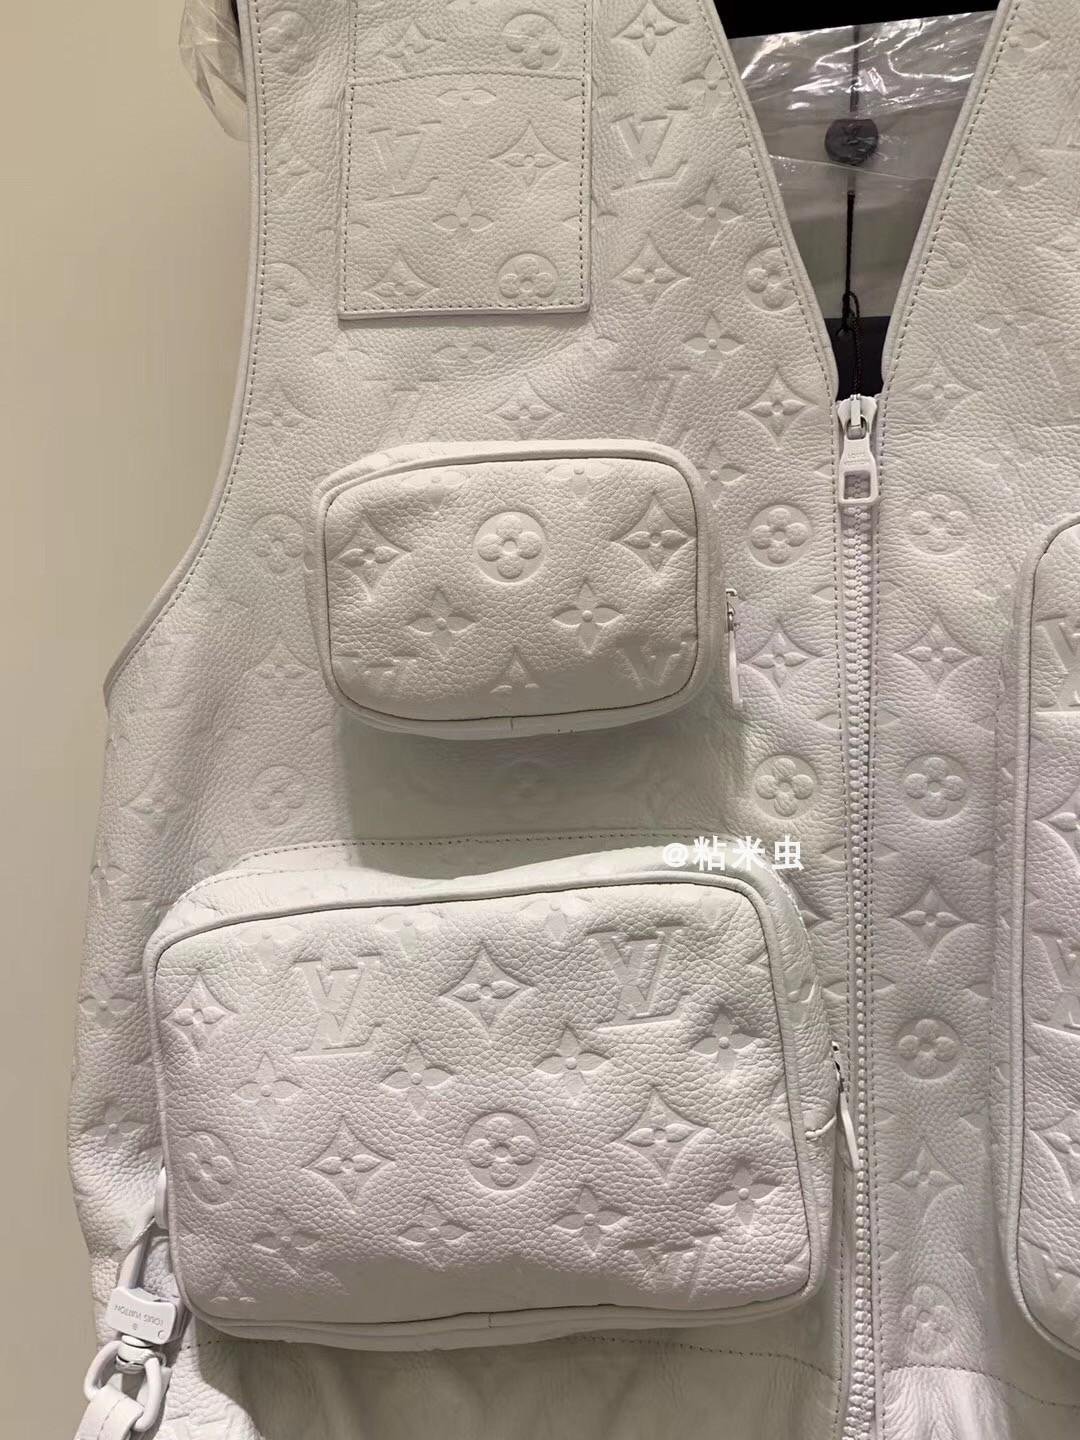 Louis Vuitton Virgil Abloh's Leather Utility Vest multi-pocket tactical Jacket 